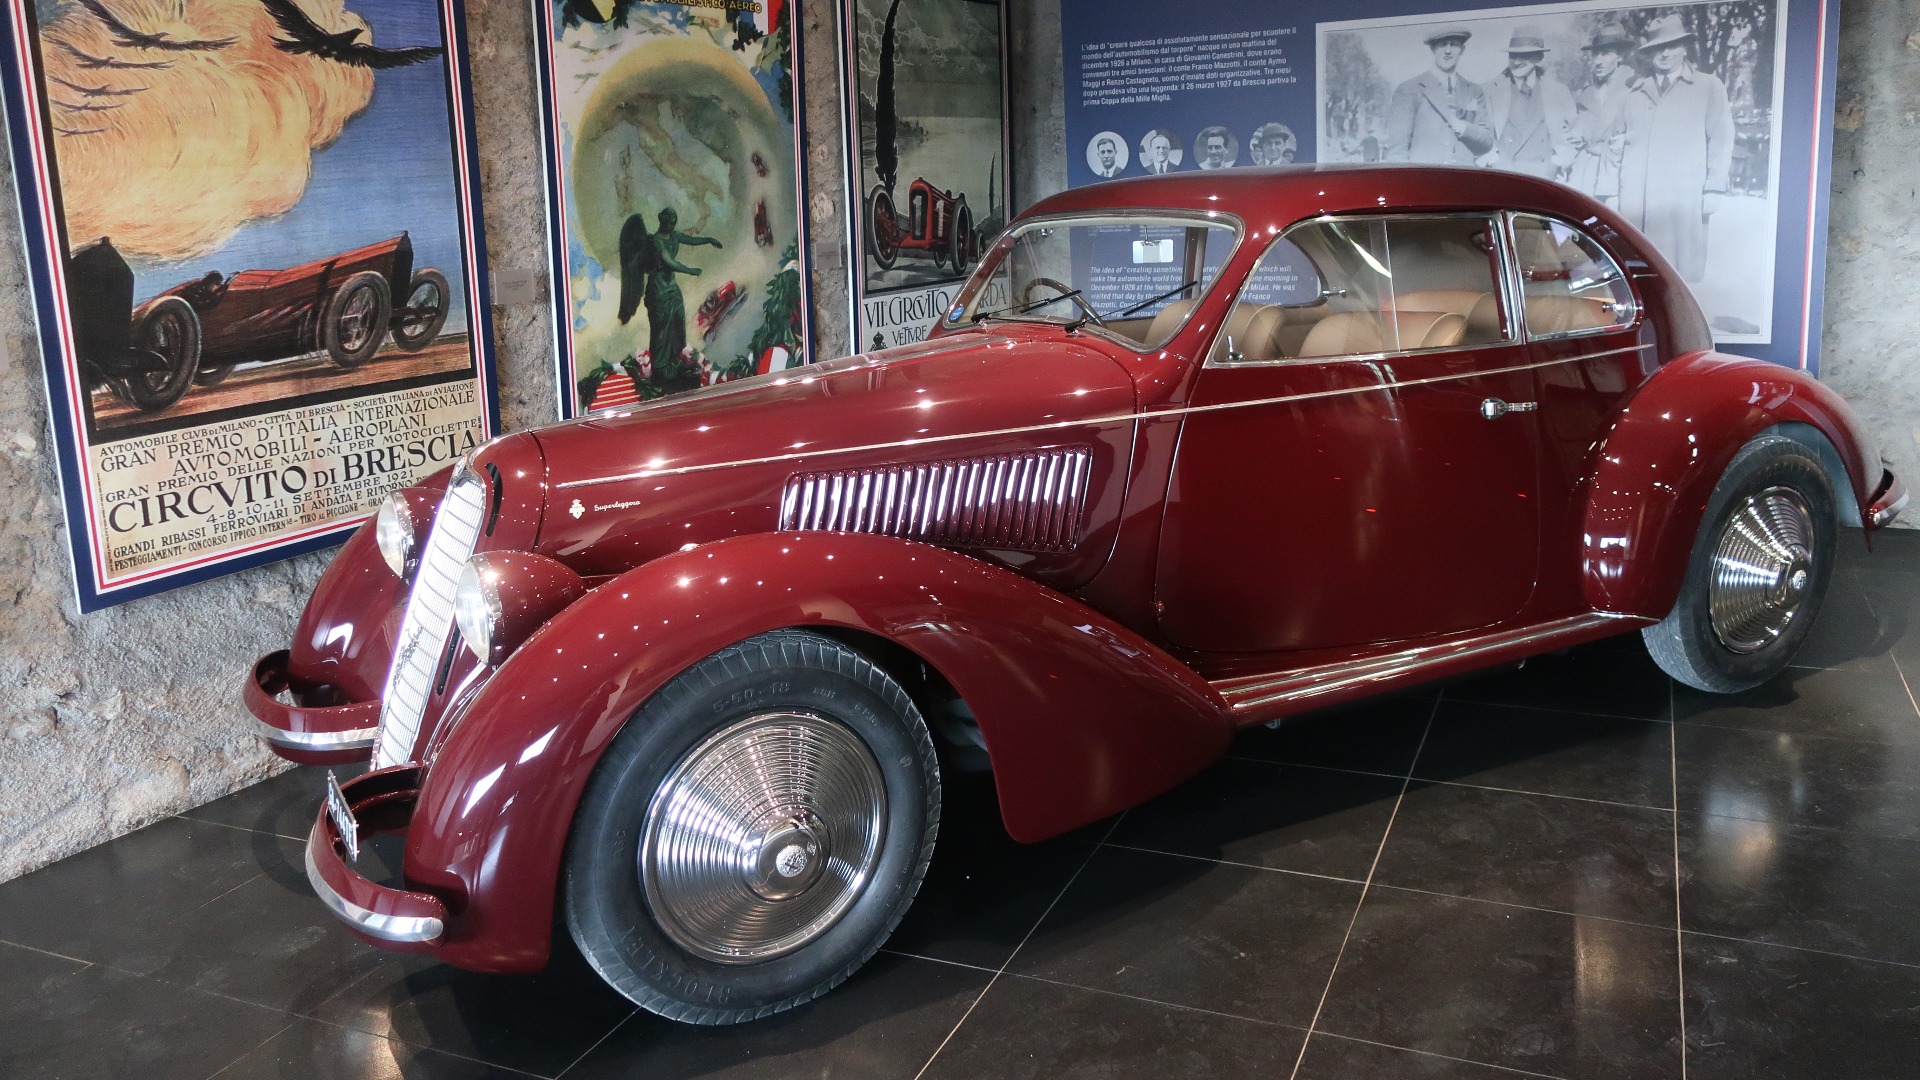 Alfa Romeo er merket man kanskje assosierer mest med Mille Miglia, og det er selvsagt flere flotte Alfaer utstilt.